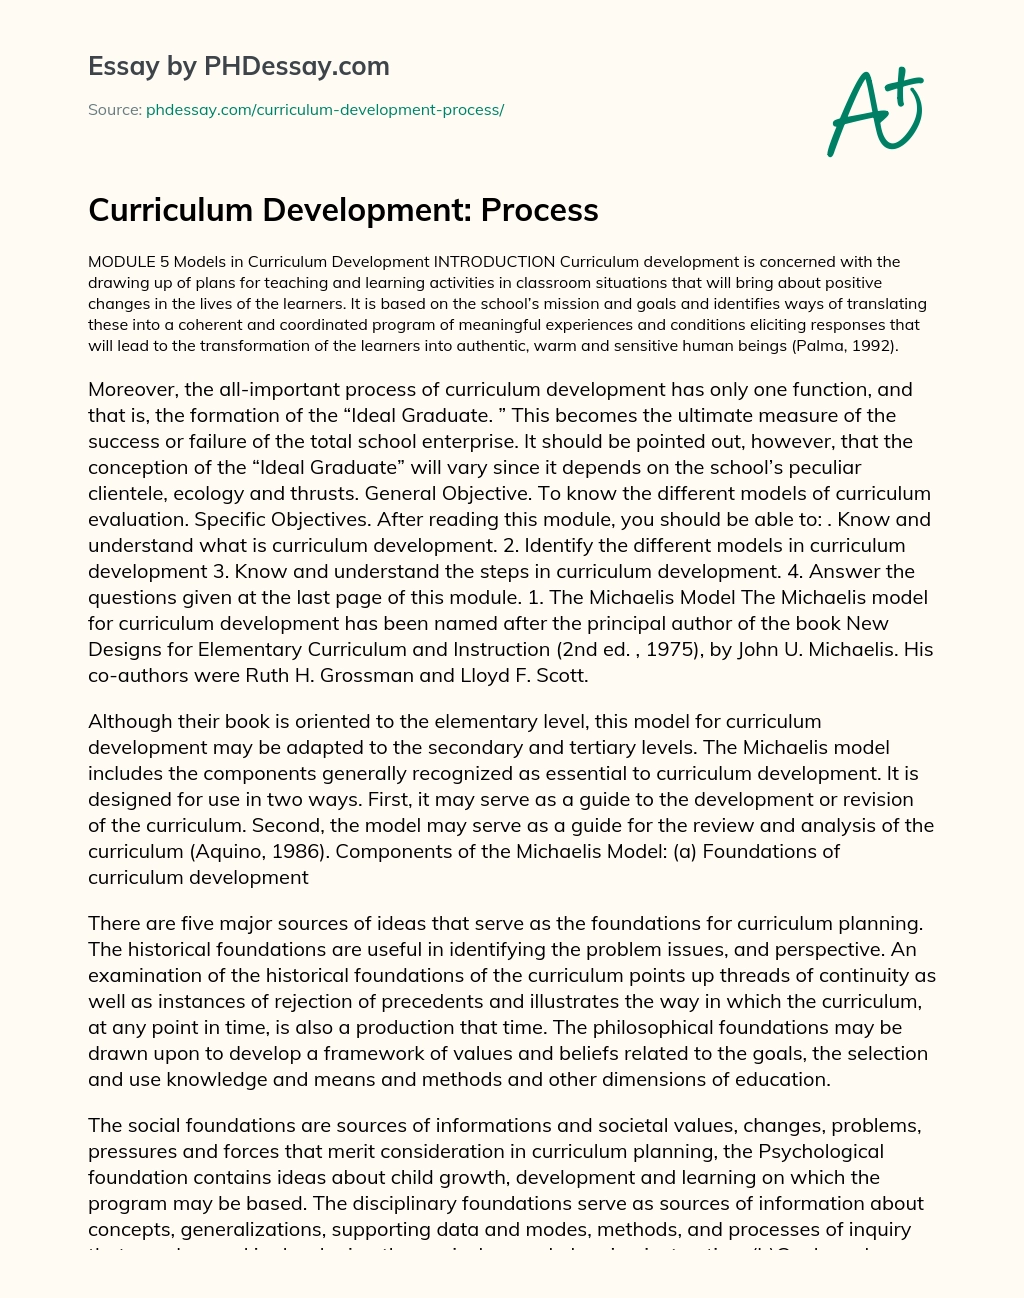 Curriculum Development: Process essay